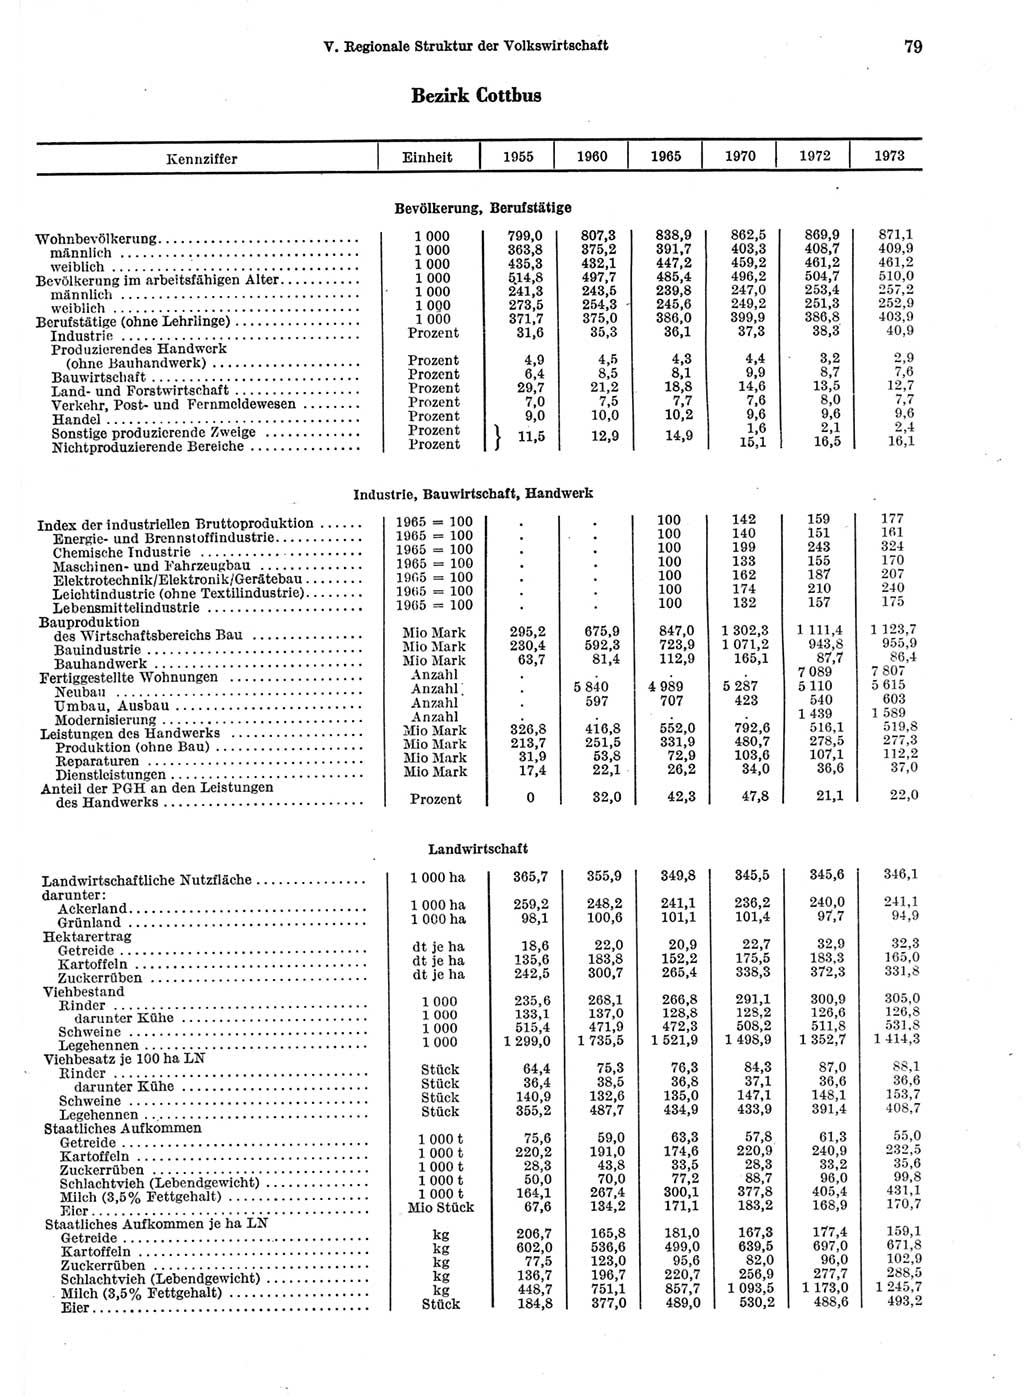 Statistisches Jahrbuch der Deutschen Demokratischen Republik (DDR) 1974, Seite 79 (Stat. Jb. DDR 1974, S. 79)